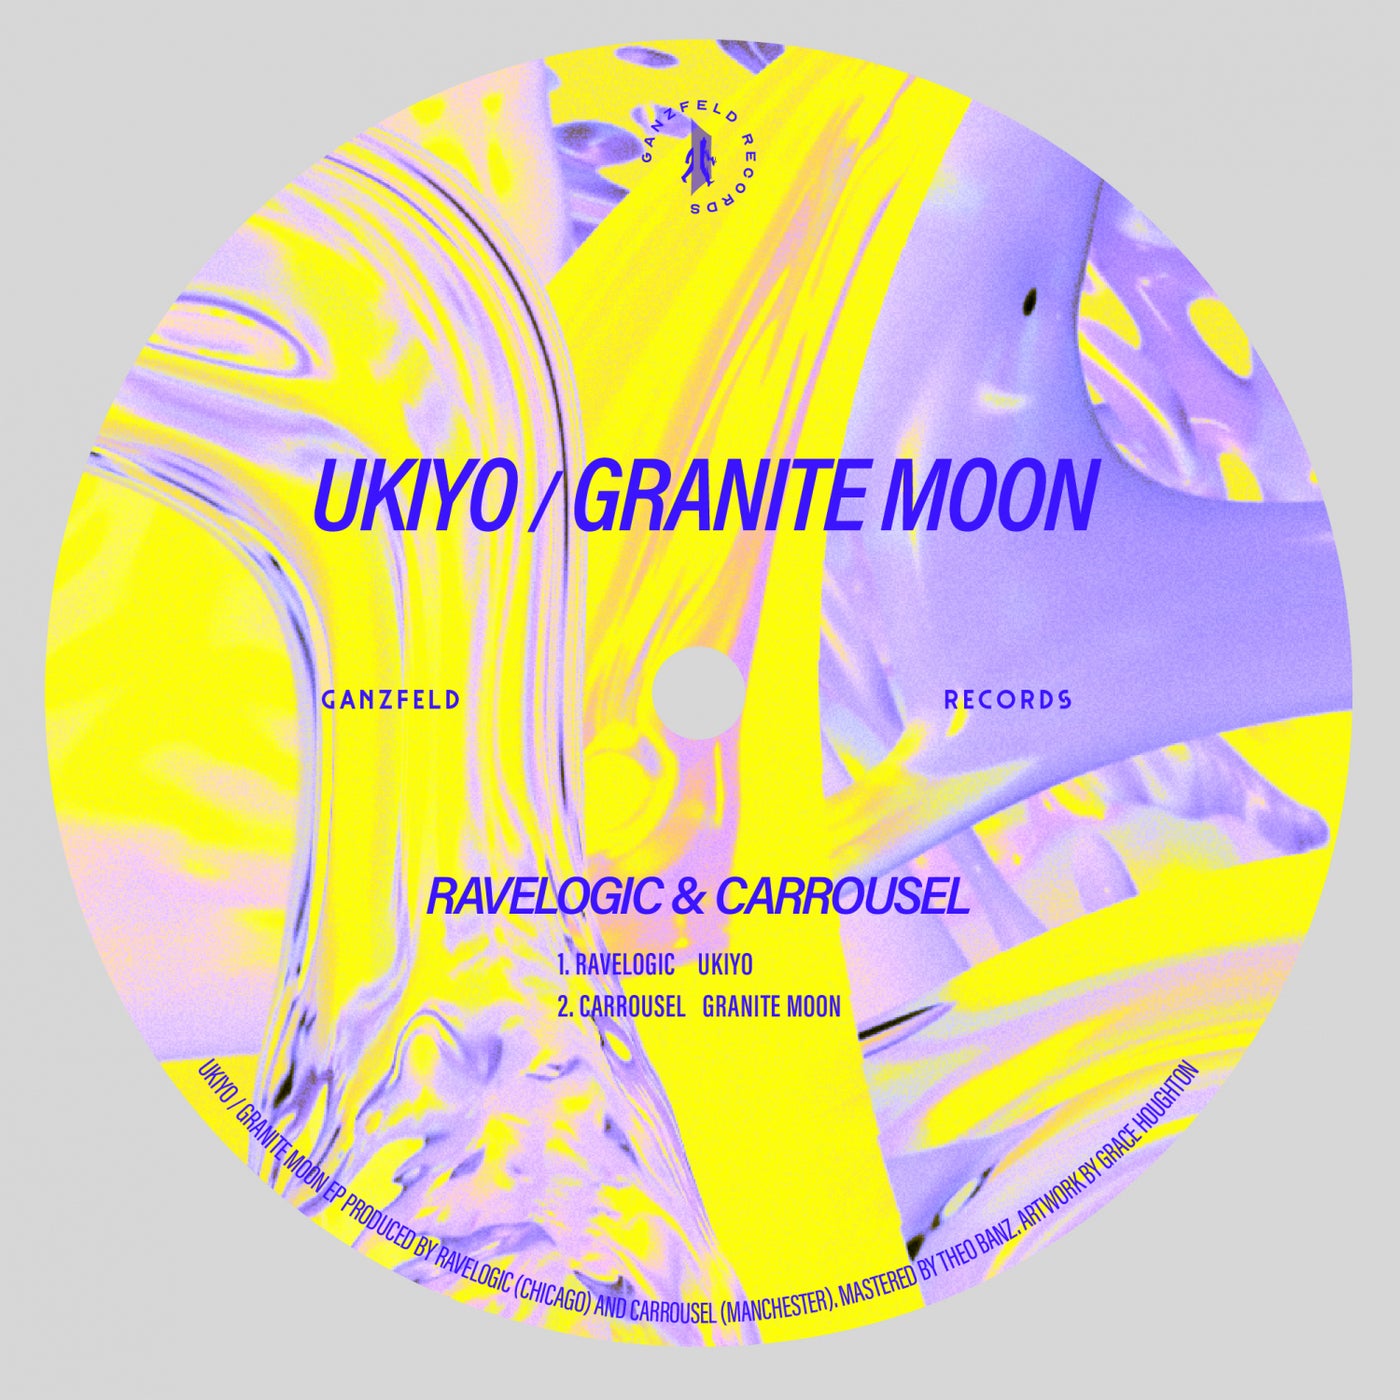 Ukiyo / Granite Moon